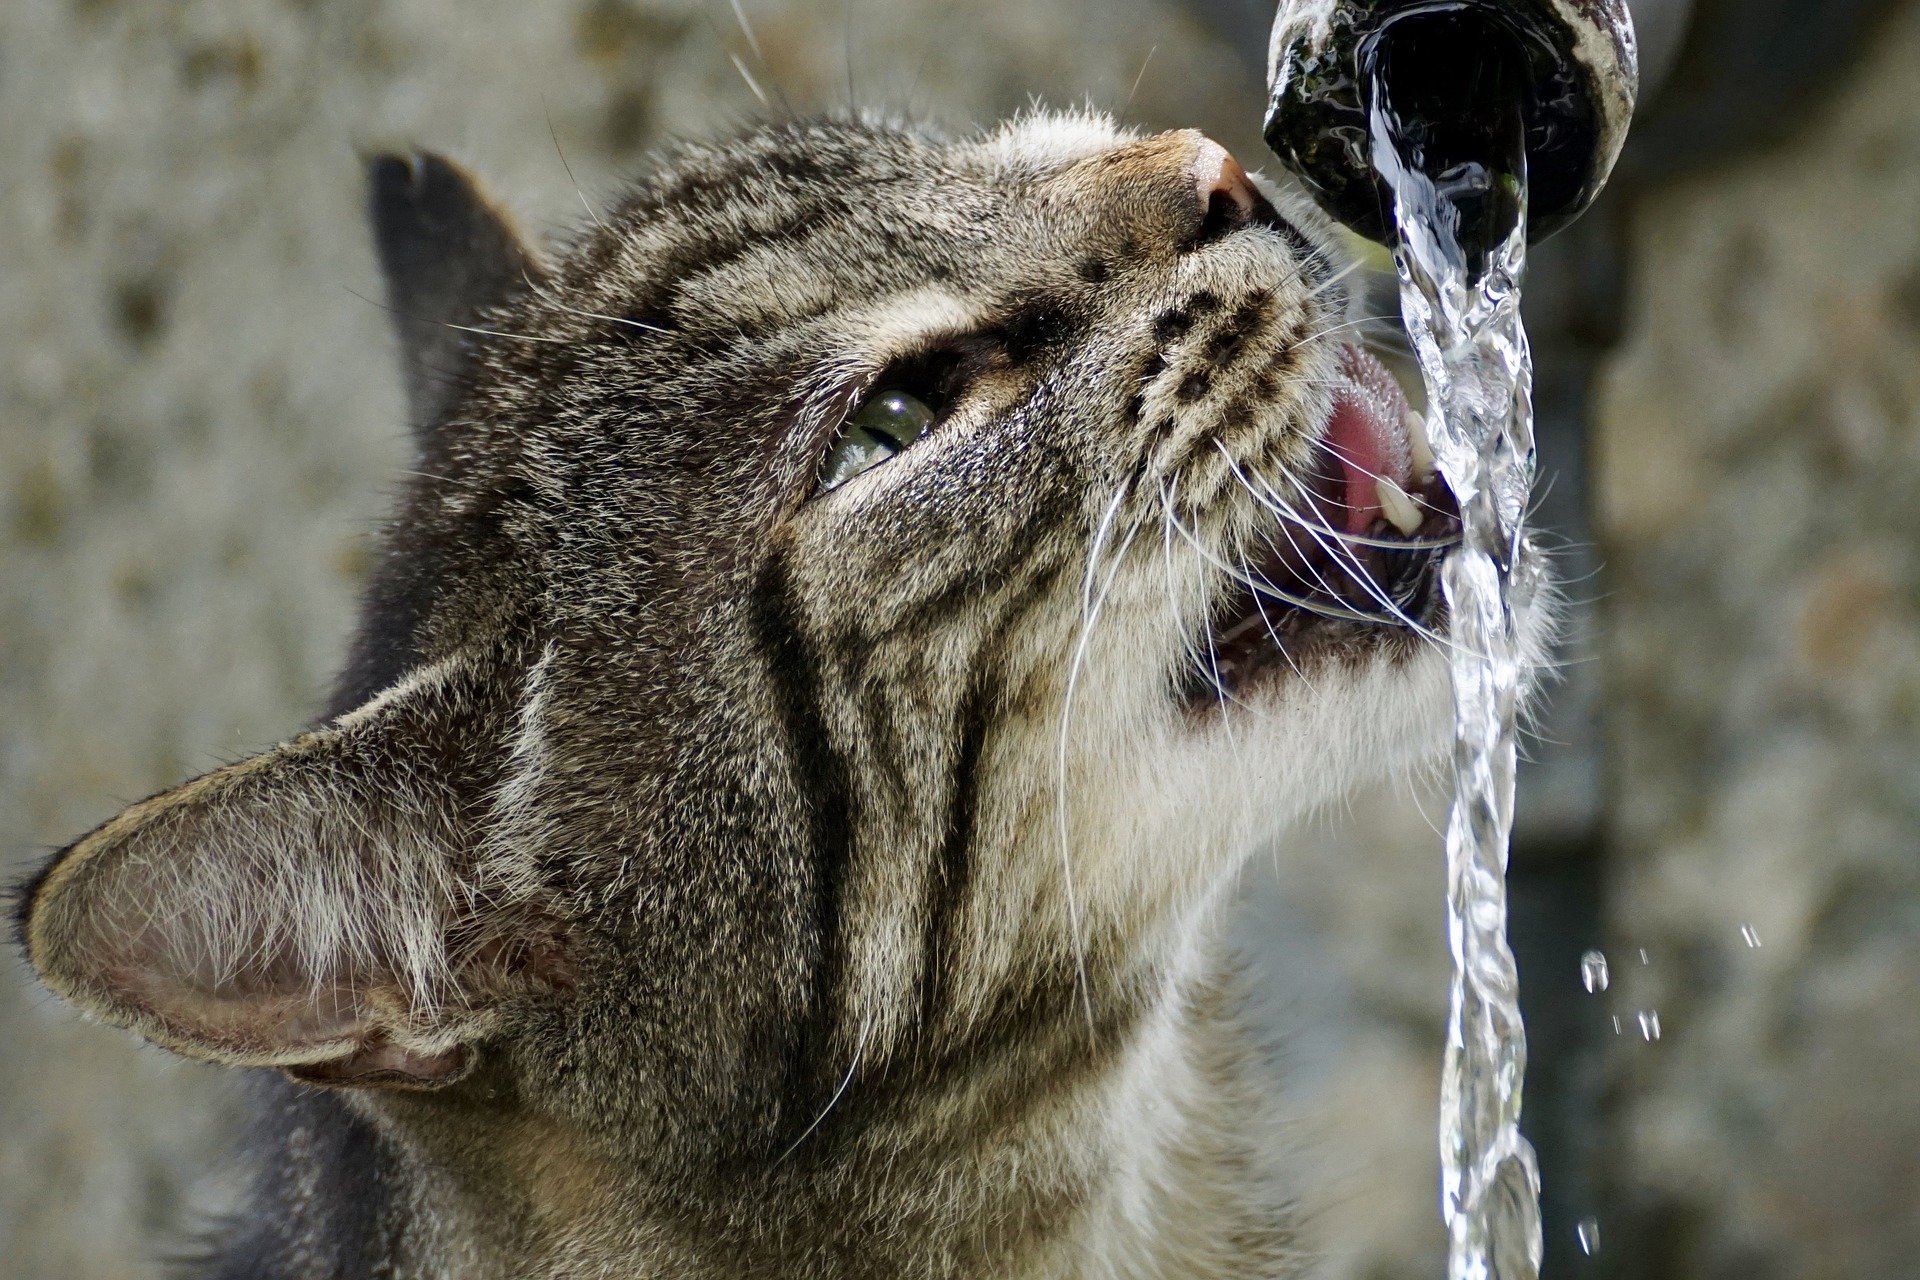 chat boit de l'eau d'une source très saine